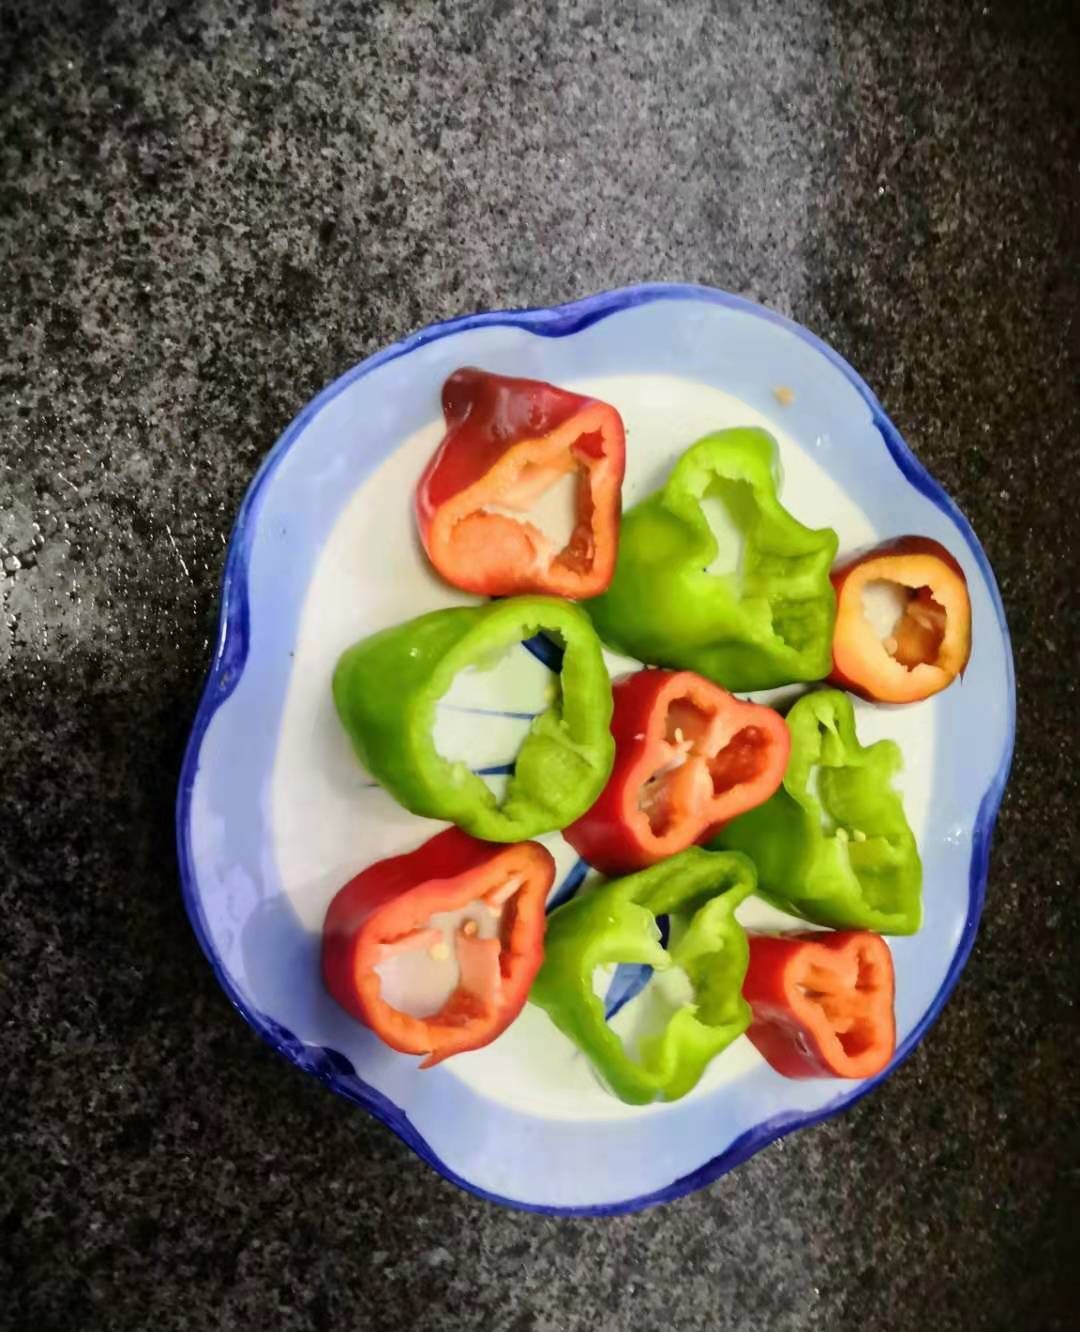 红辣椒ristras串在圣菲，新墨西哥 库存图片. 图片 包括有 有机, 可食, 五颜六色, 干燥, 辣椒 - 118534609